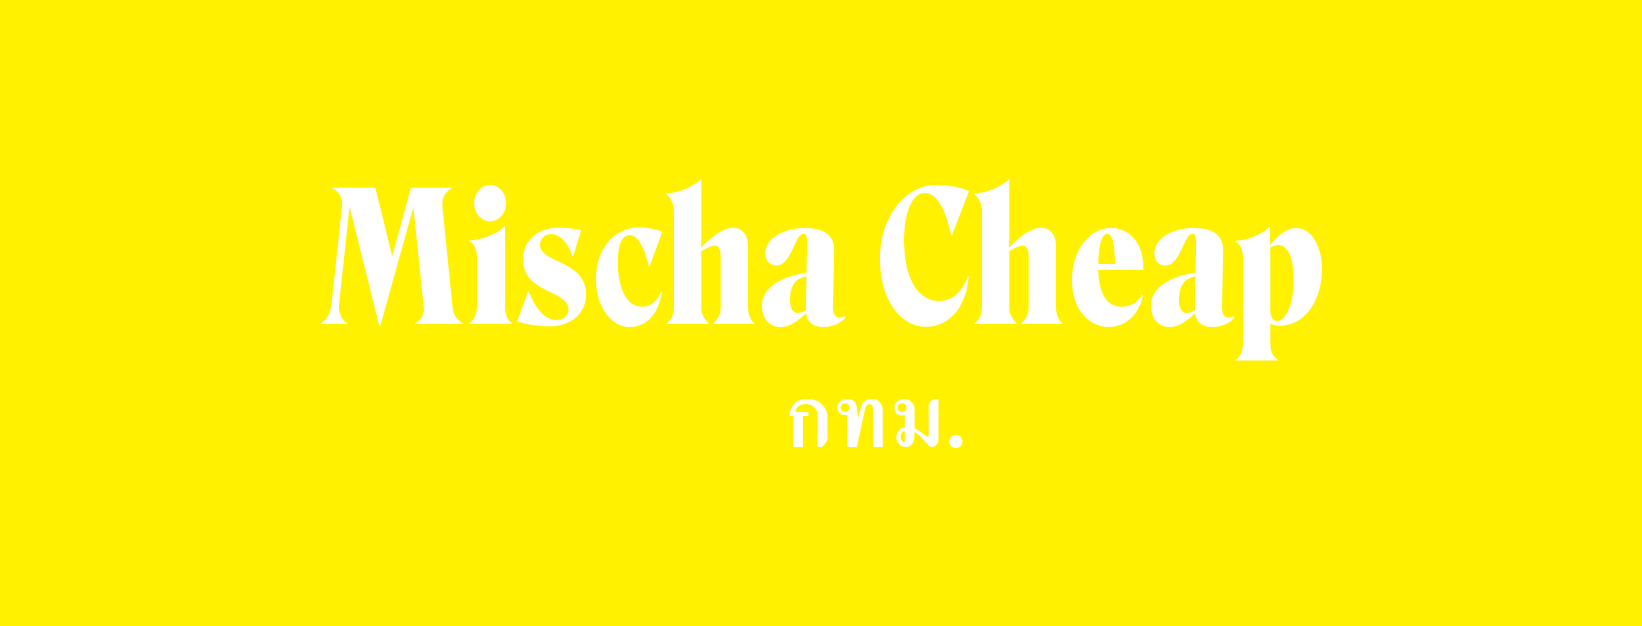 Mischa Cheap (Mischa Cheap) : กรุงเทพมหานคร (Bangkok)